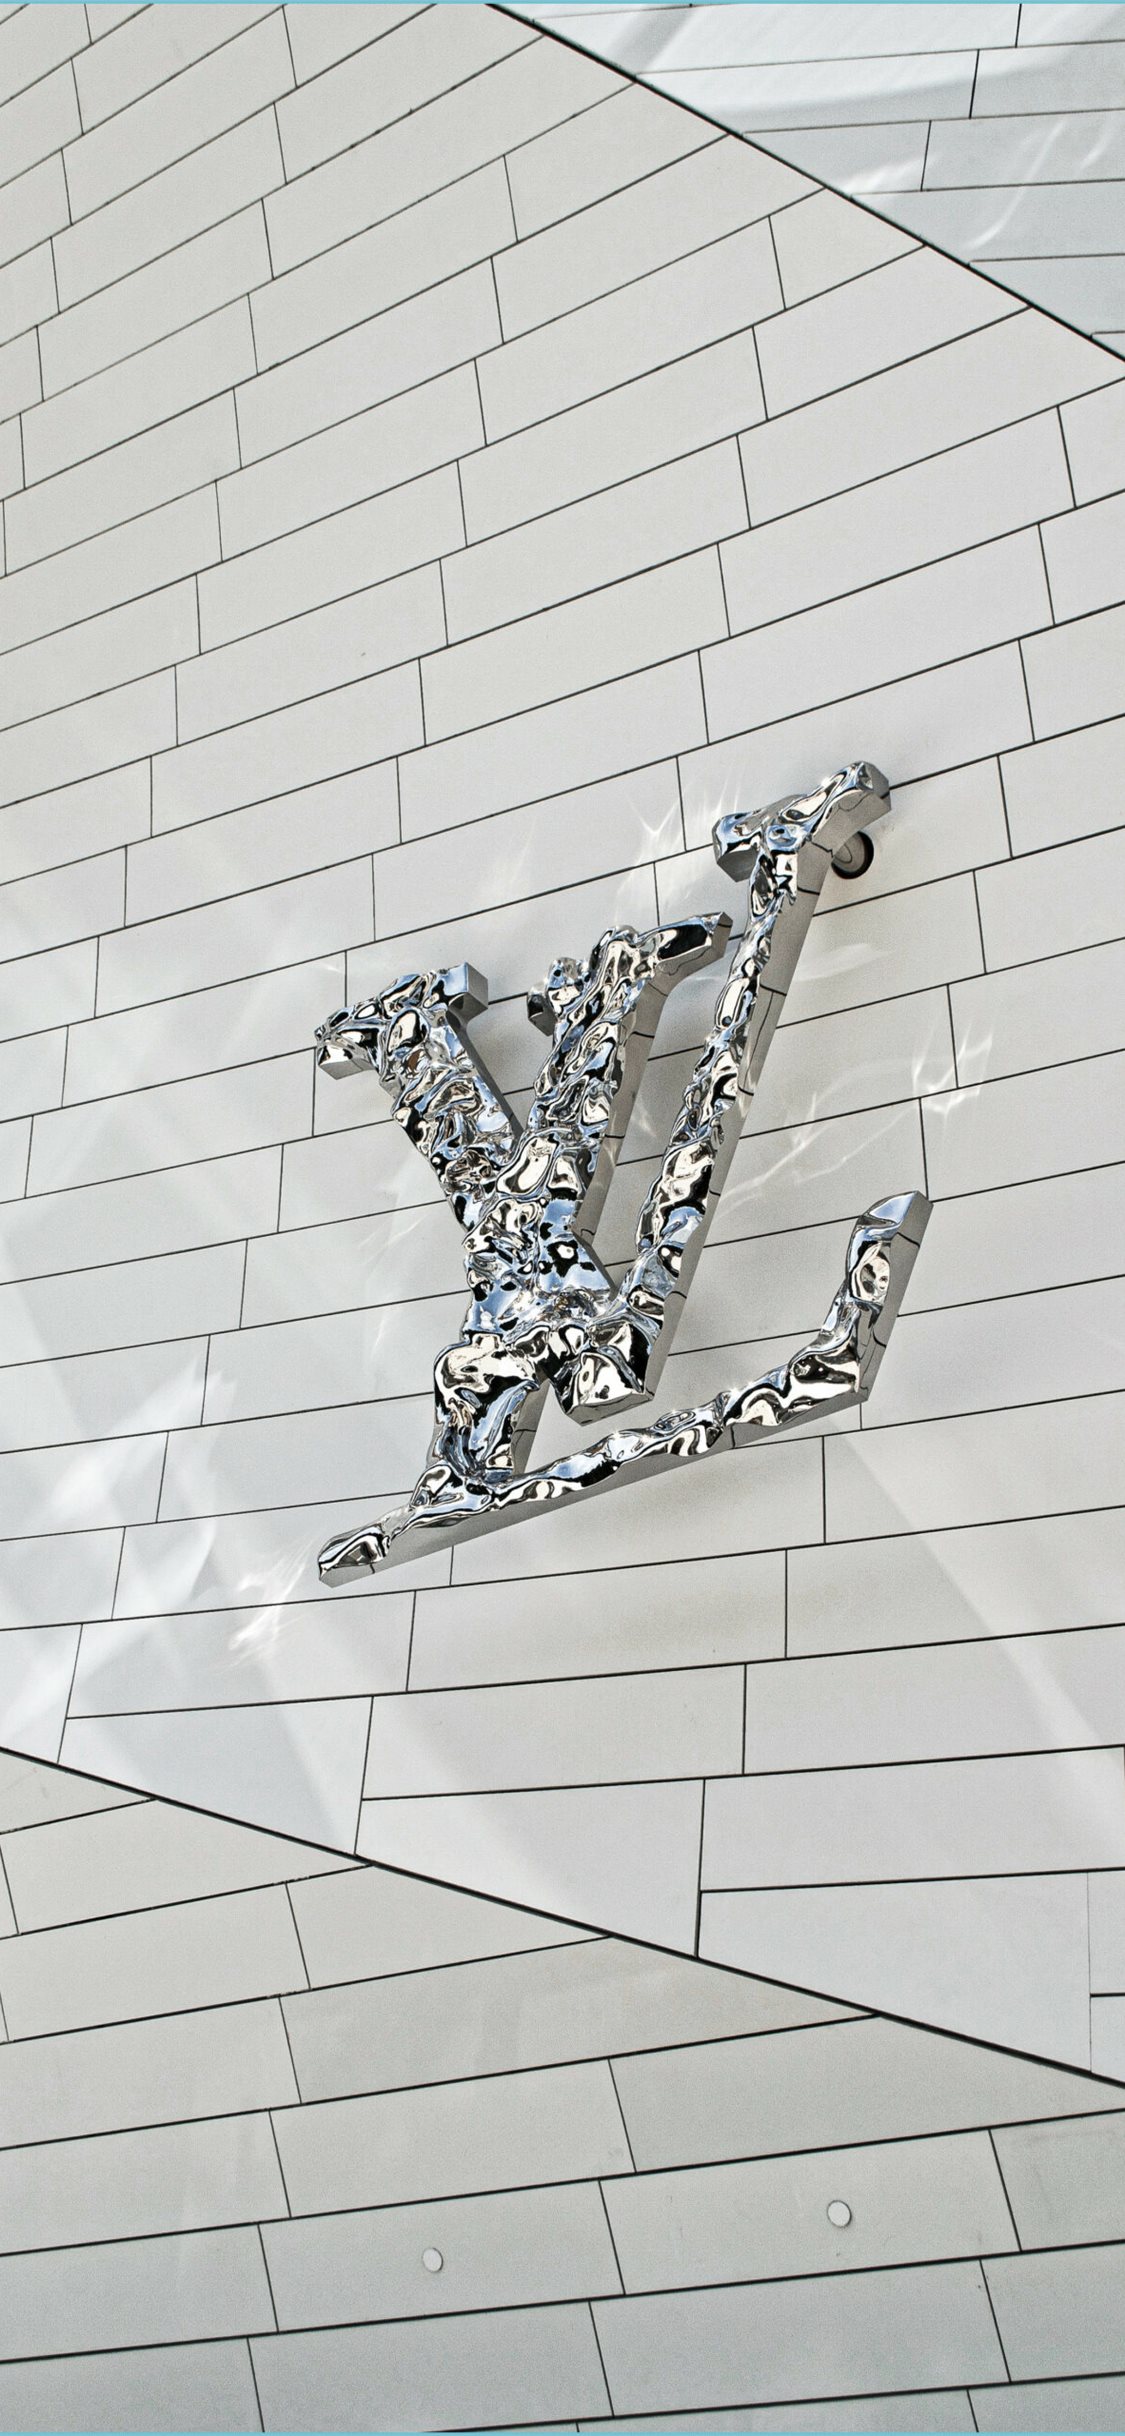 Louis Vuitton iPad Wallpapers  Top Những Hình Ảnh Đẹp